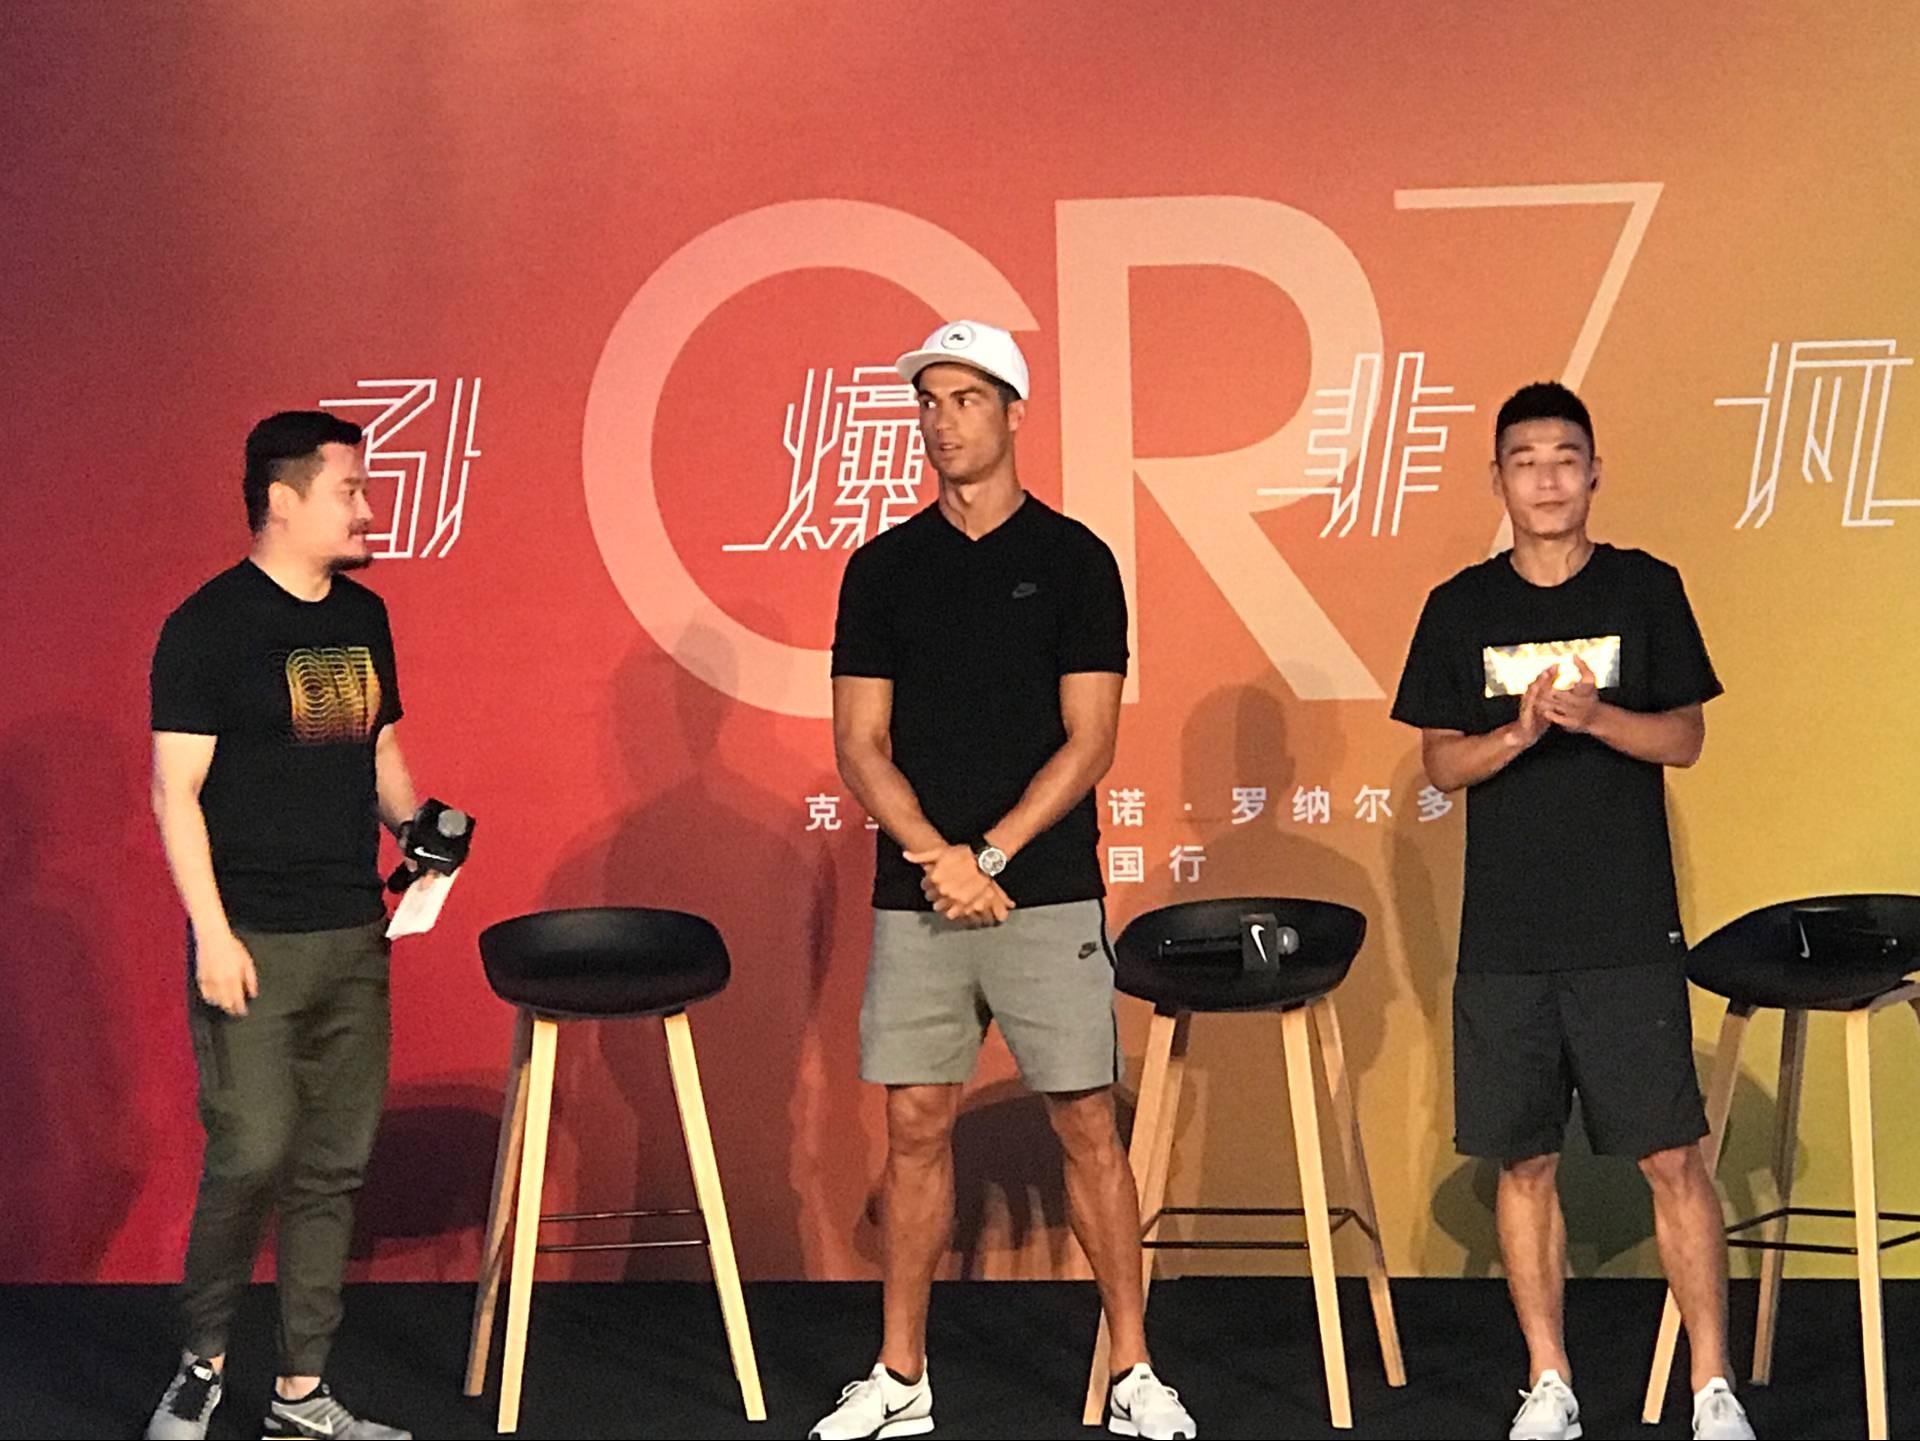 图集:C罗在北京出席活动,与武磊见面交换球衣